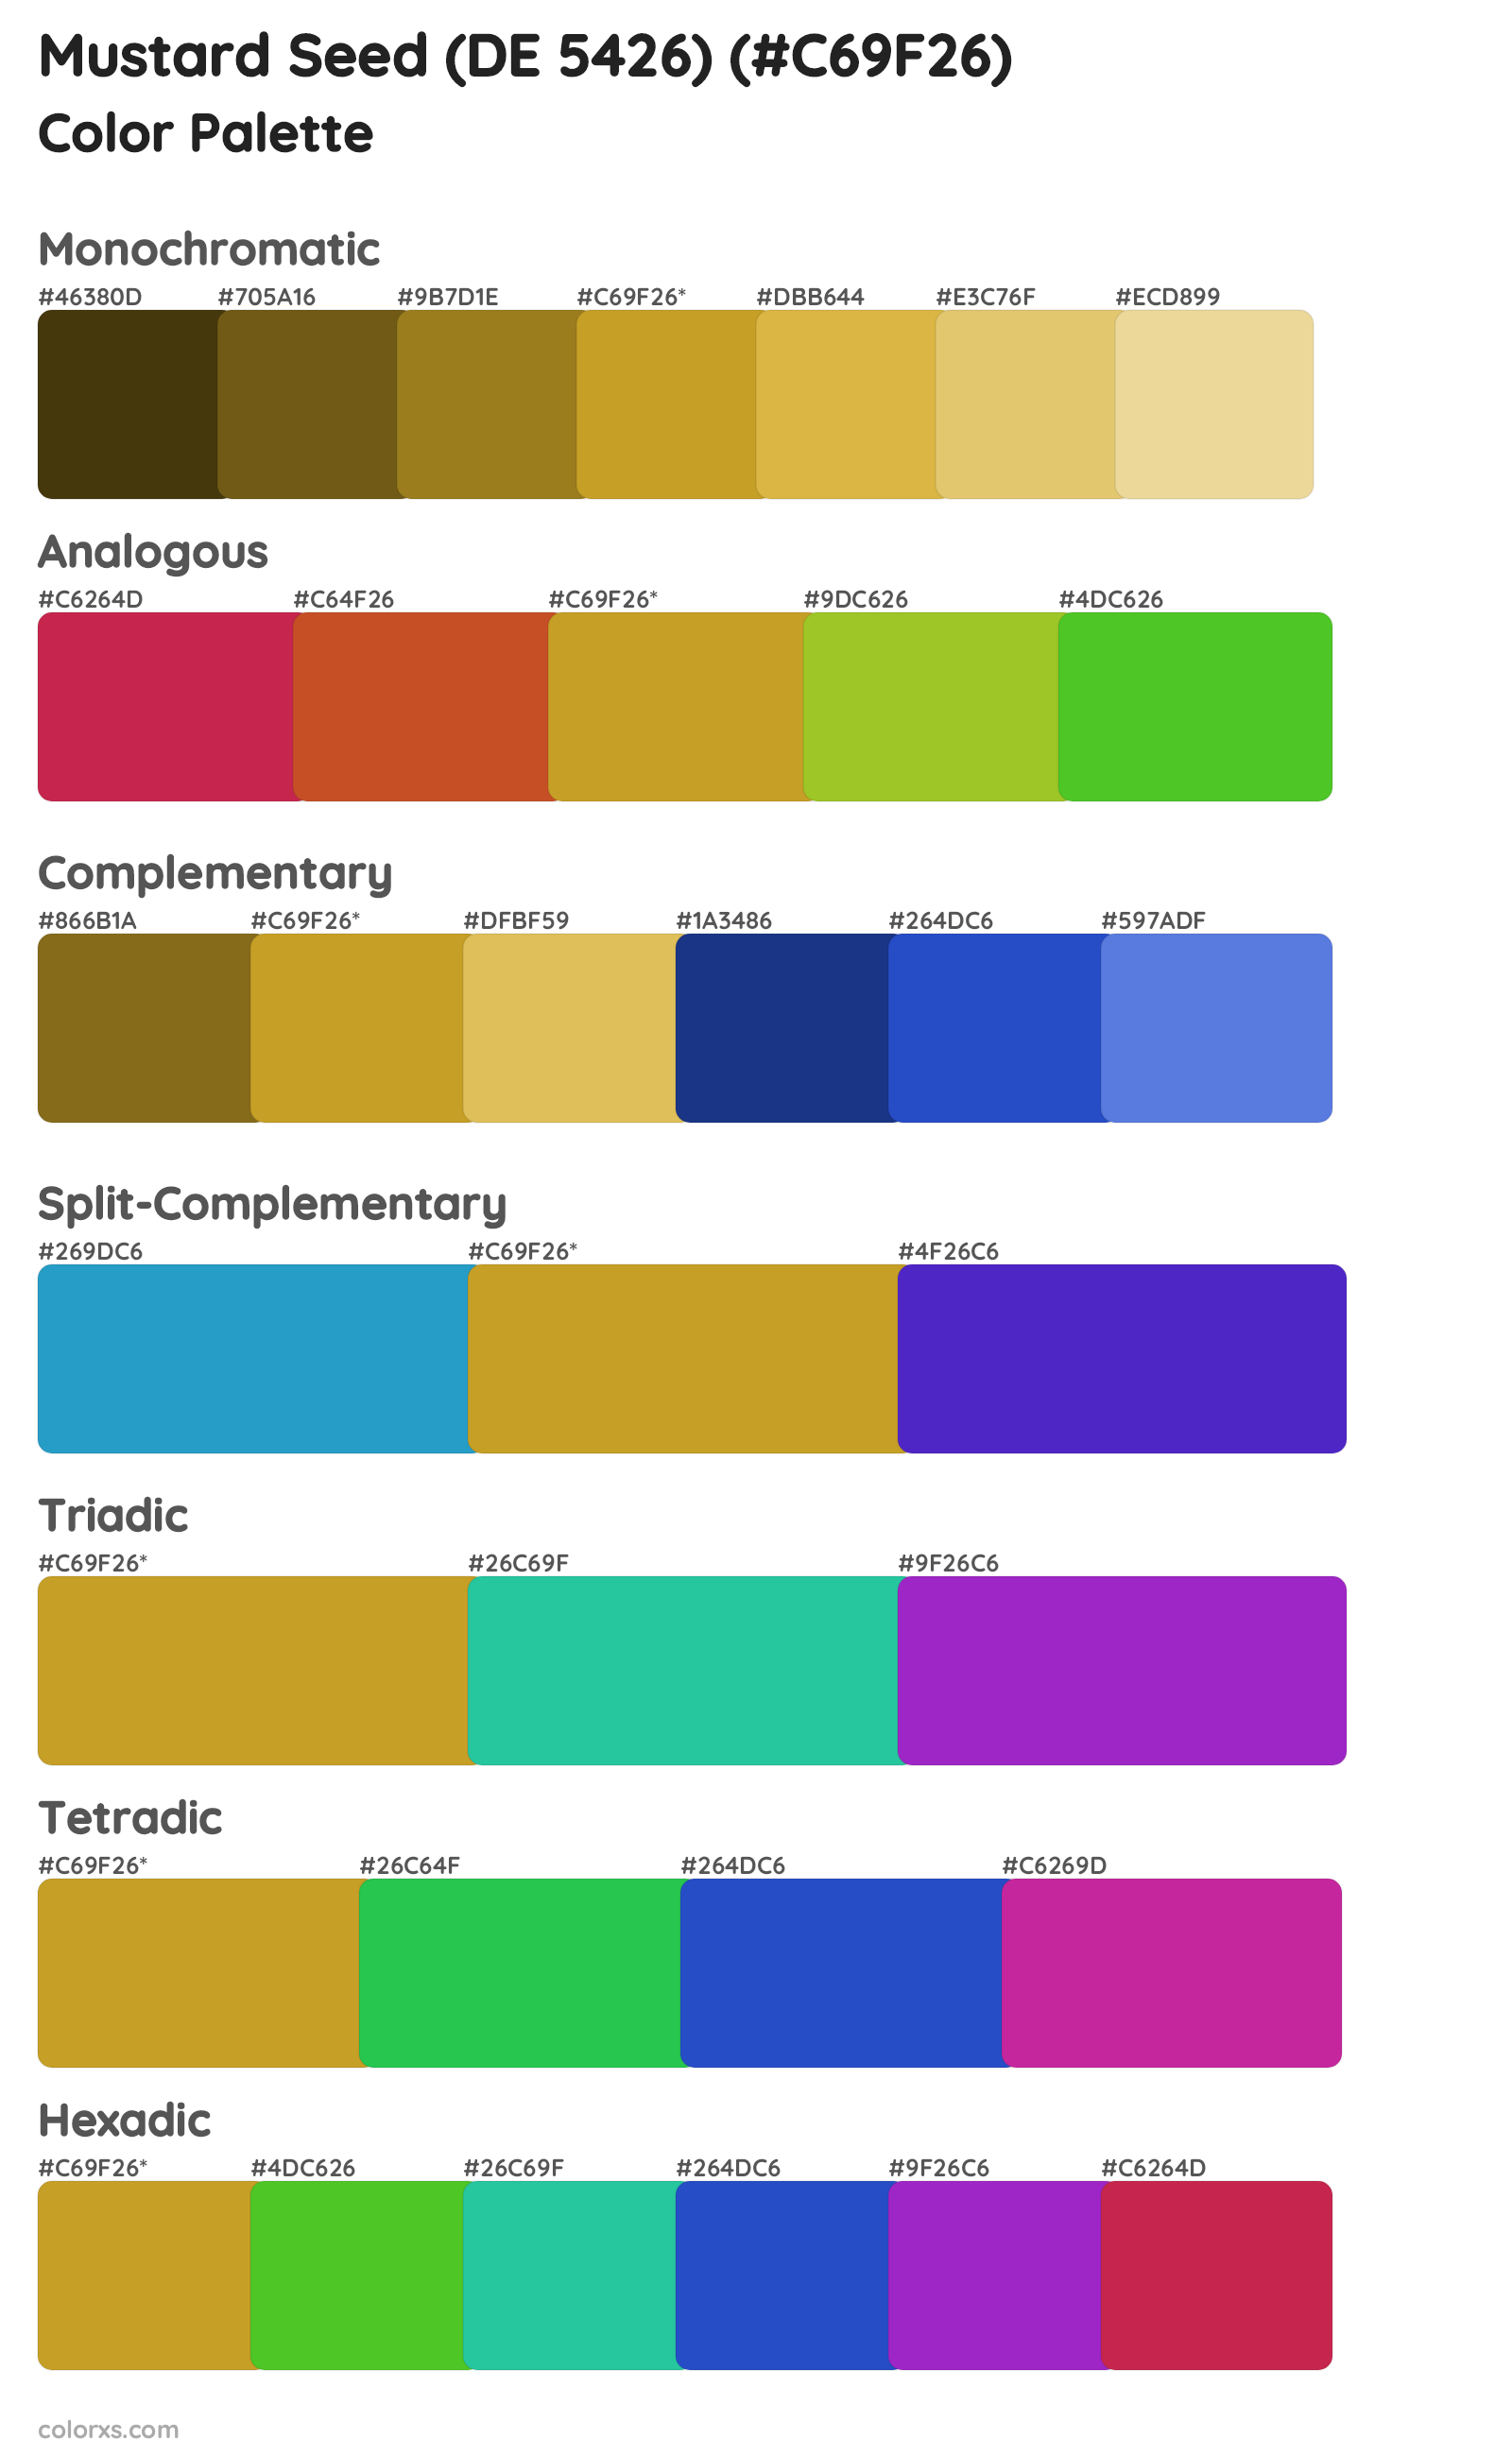 Mustard Seed (DE 5426) Color Scheme Palettes